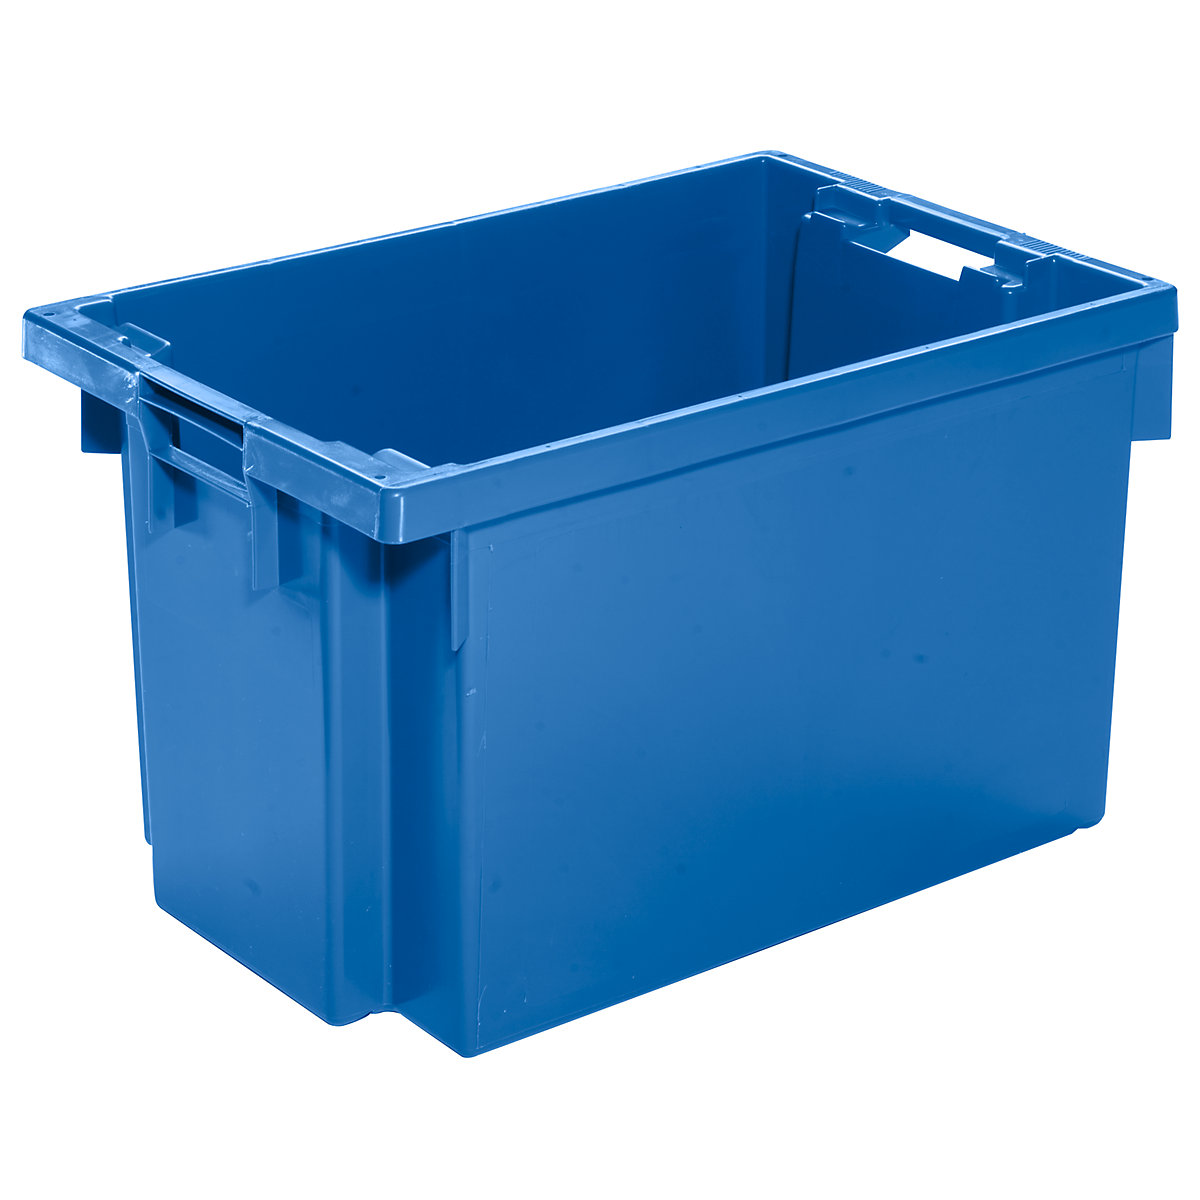 Drehstapelbehälter aus HDPE, Inhalt 60 l, Wände und Boden geschlossen, blau